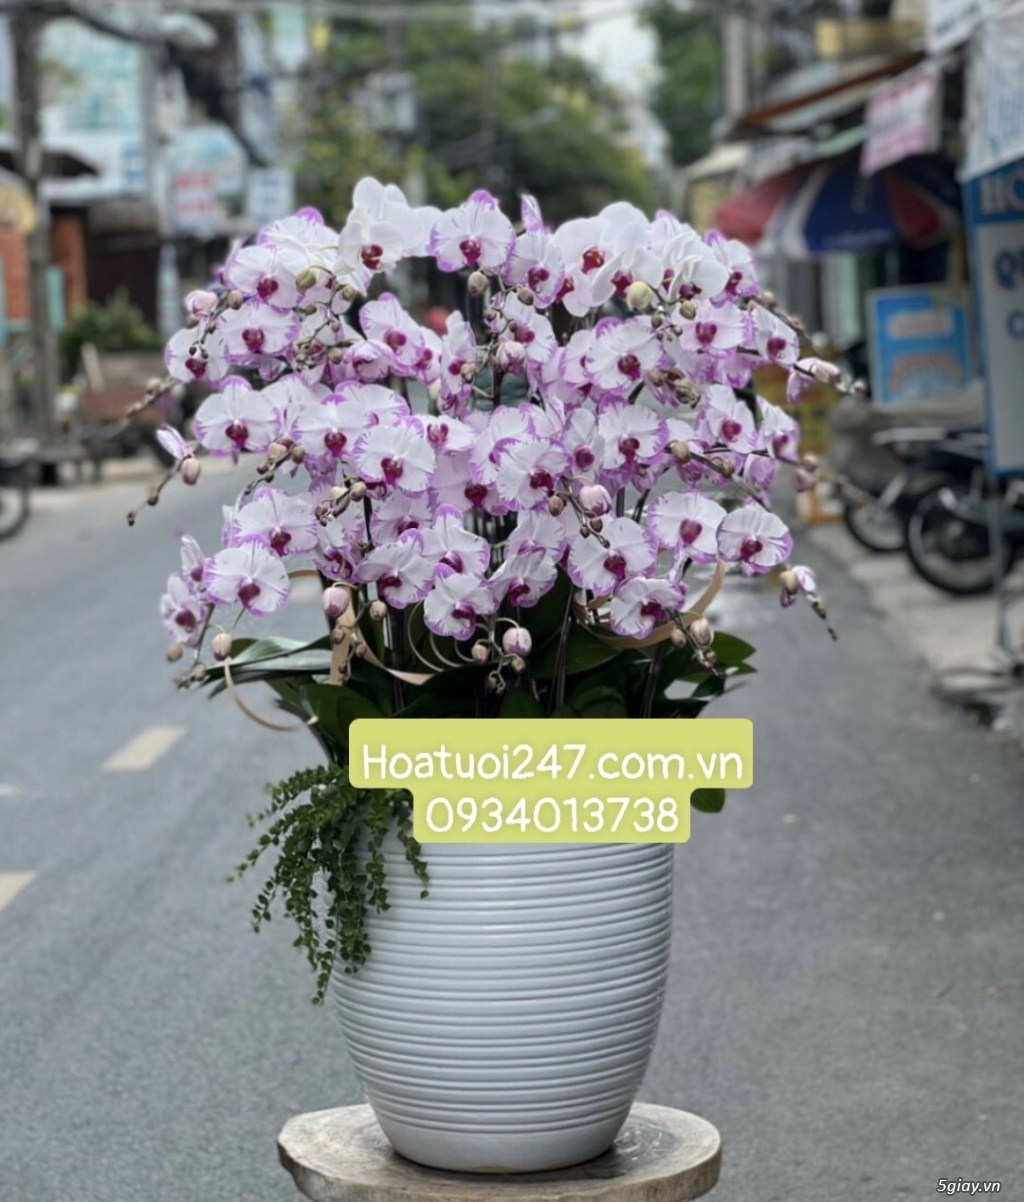 Shop hoa tươi Lan Hồ Điệp 247 tại Phú Nhuận 0934013738 - 11